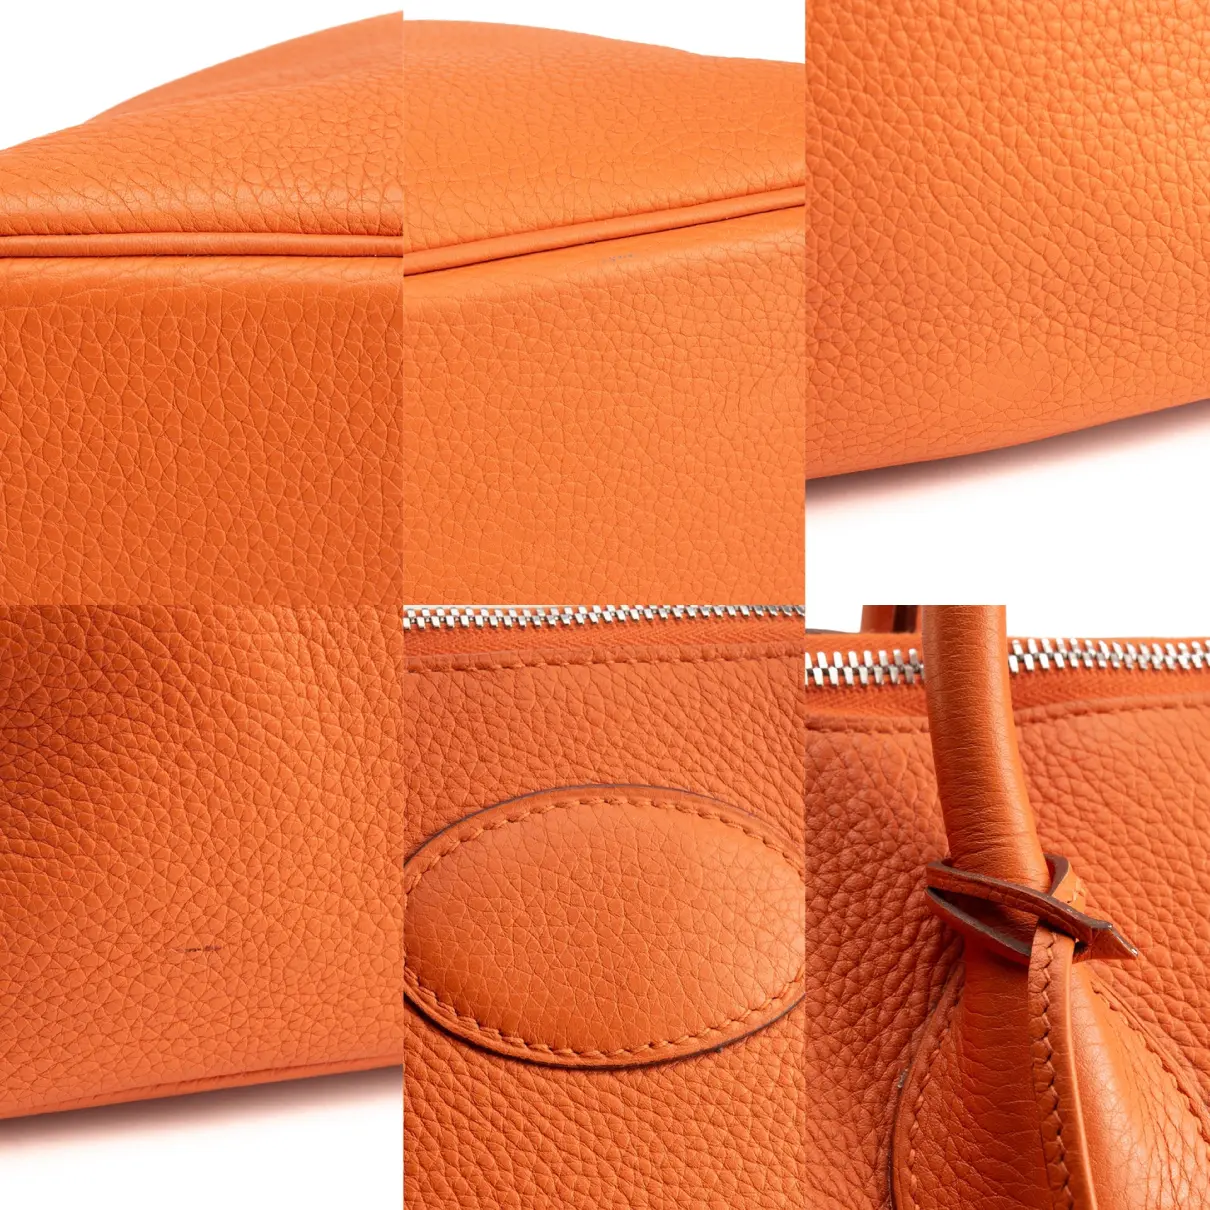 Bolide leather bag Hermès